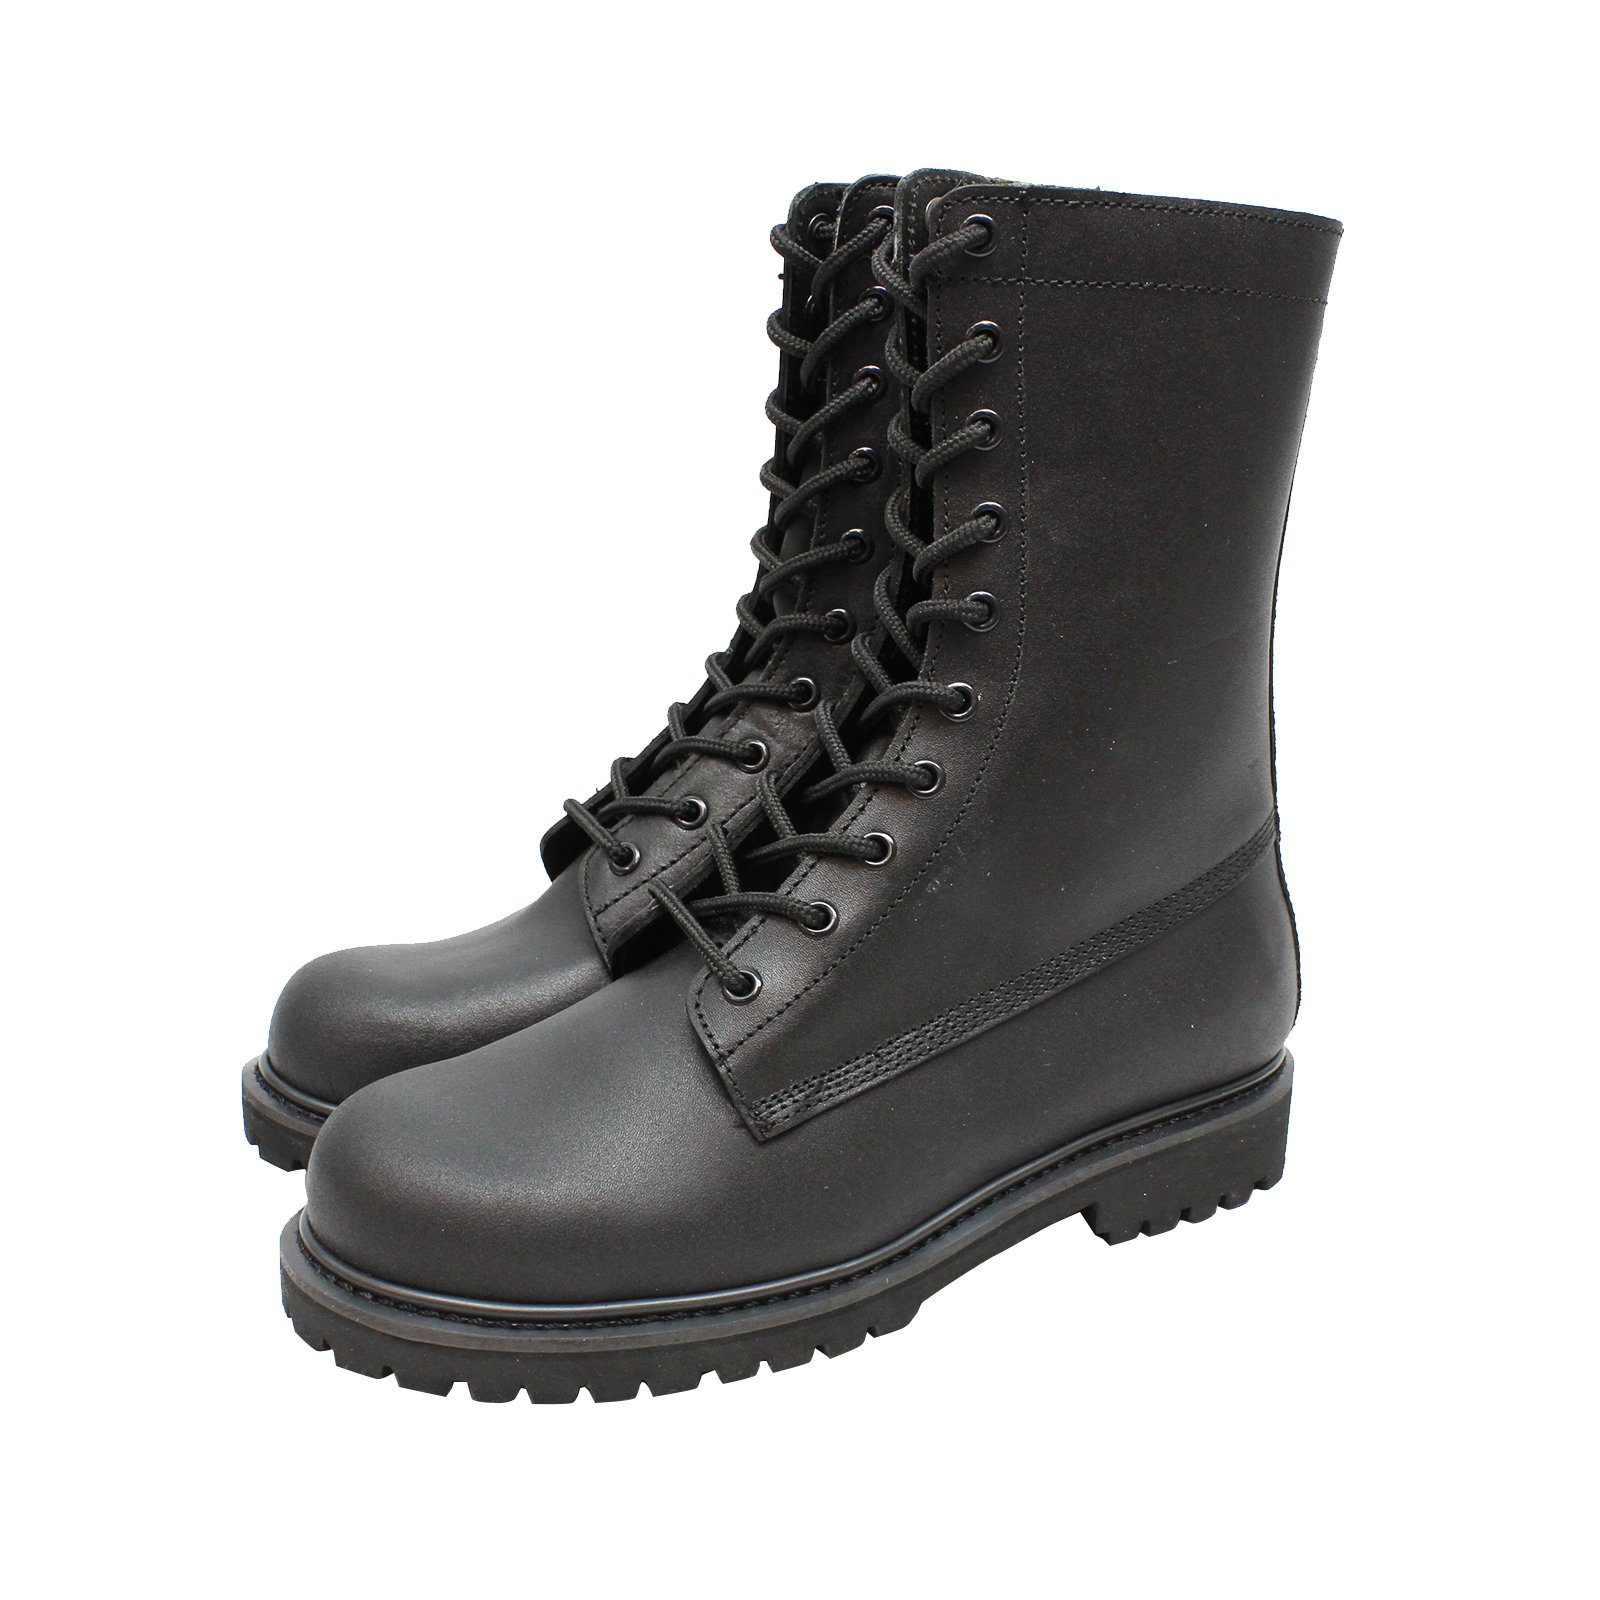 COMMANDO Leather GP (General Purpose) Boot - COMMANDO NEW : BRANDS ...